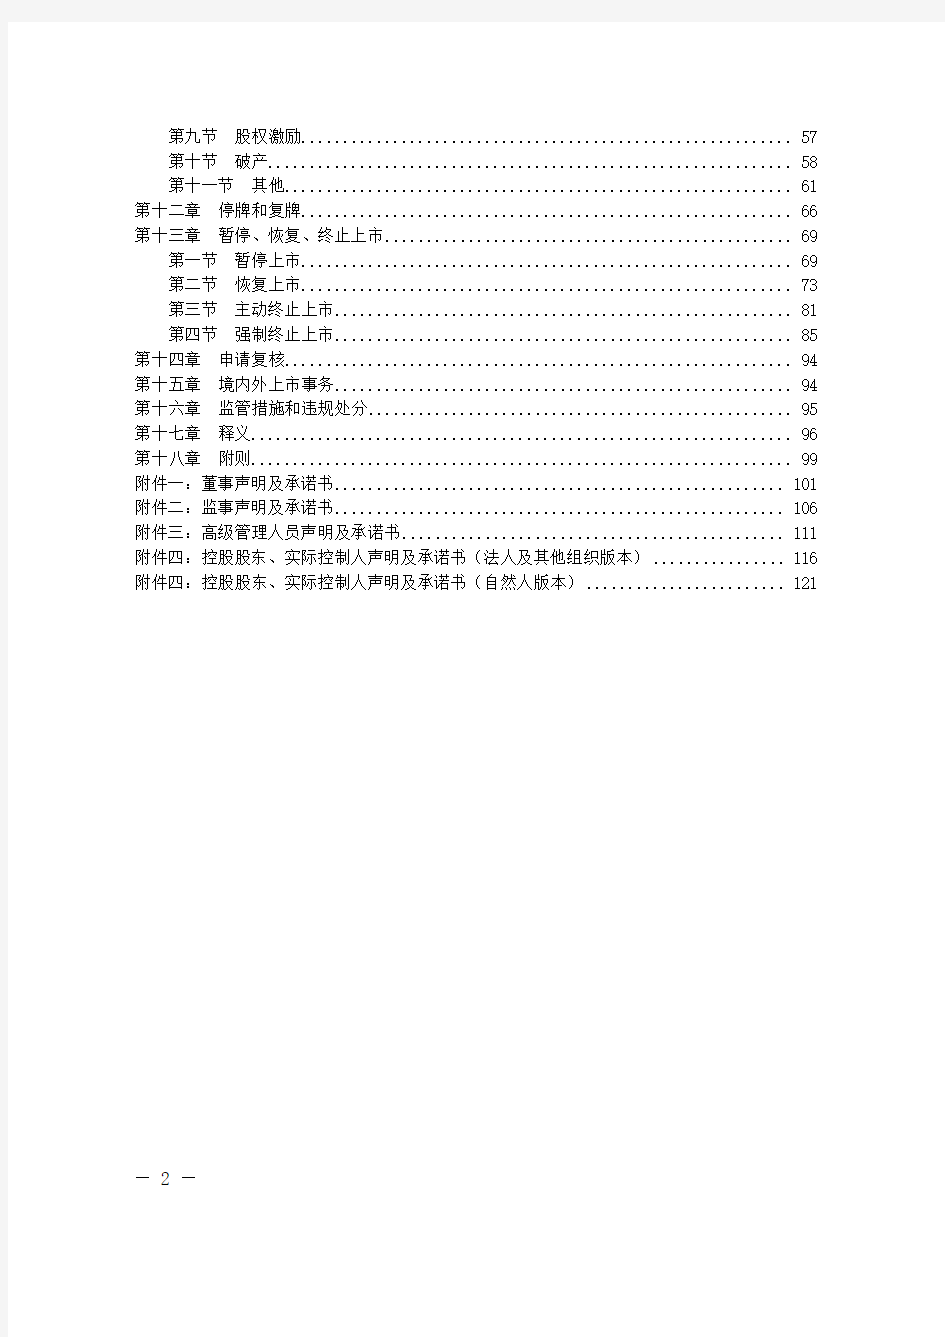 深圳证券交易所创业板股票上市规则(2014年修订)